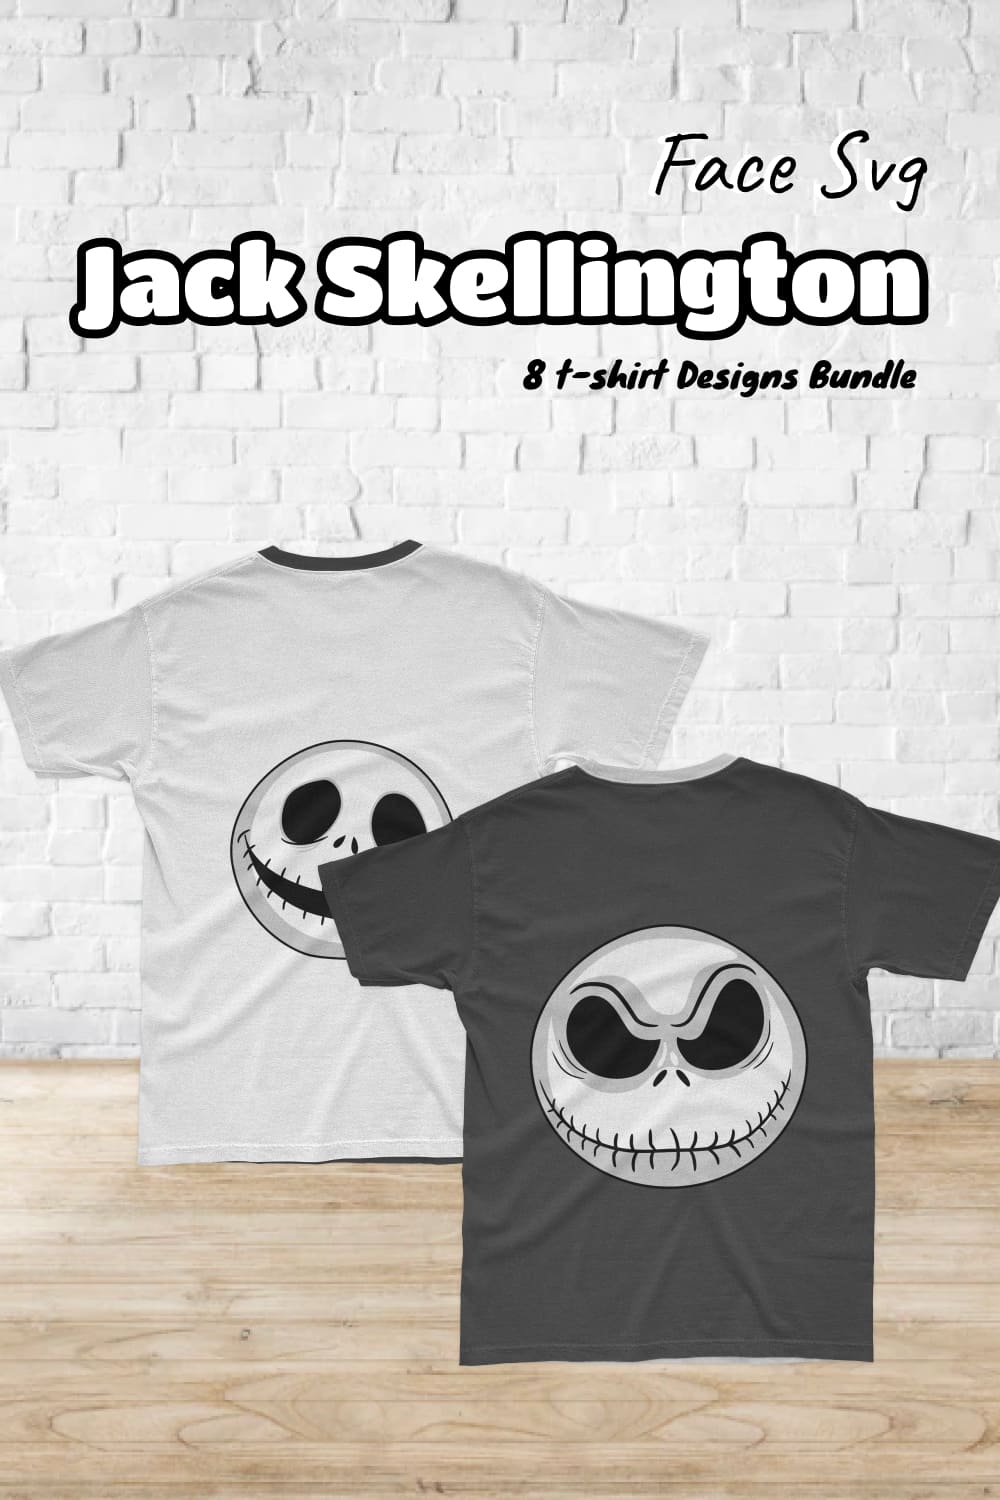 Jack skellington face svg - pinterest image preview.